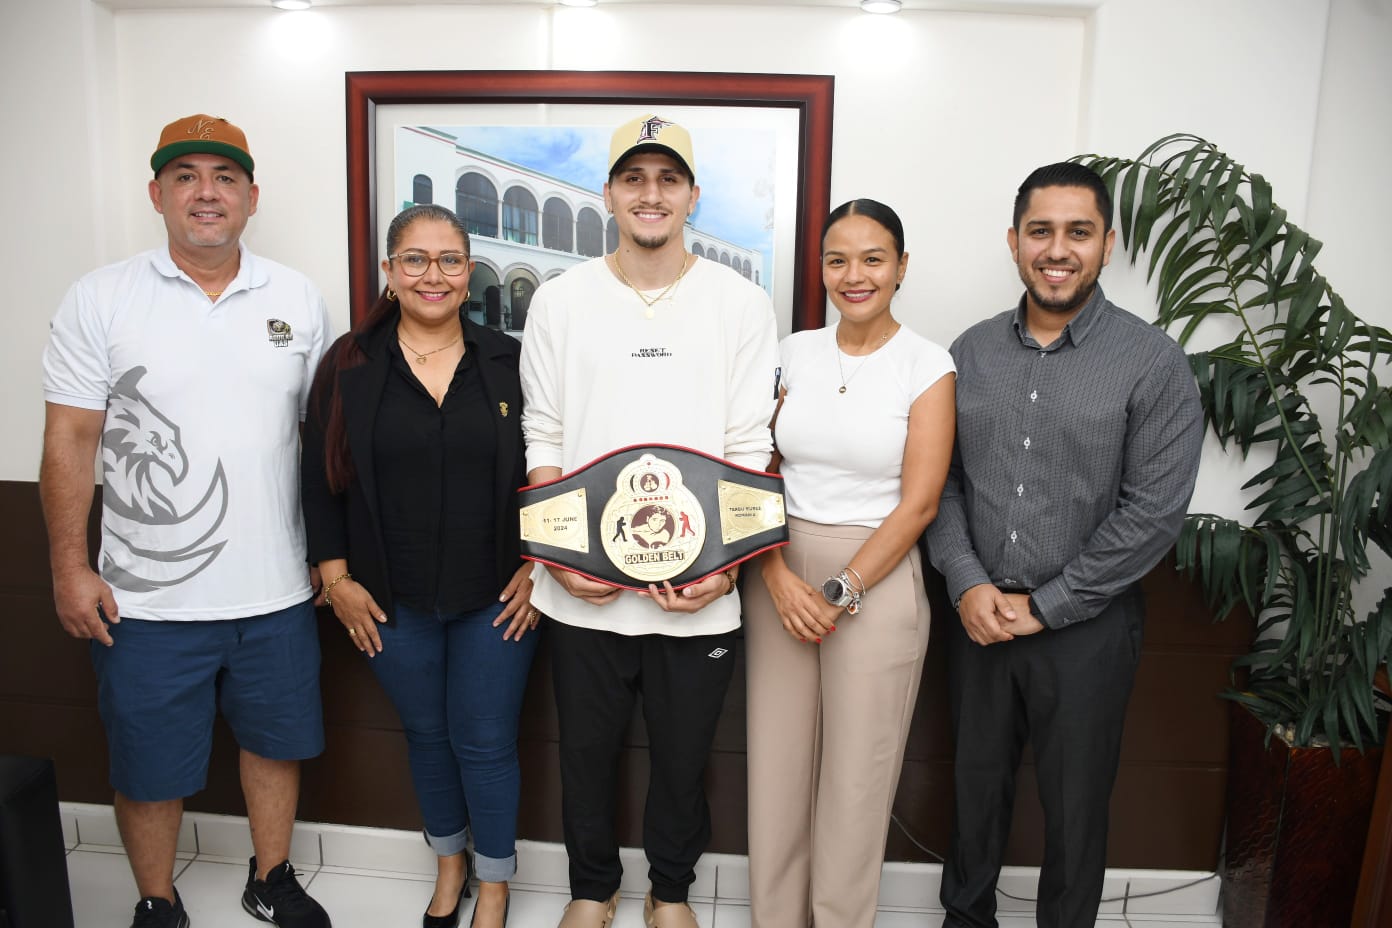 El Estudiante y campeón de boxeo de la Universidad Autónoma de Sinaloa (UAS), Marco Alonso Verde Álvarez “El Green”, vuelve a mostrar su poder como pugilista Mazatleco, consiguiendo de nuevo el triunfo, previo a los Juegos Olímpicos.